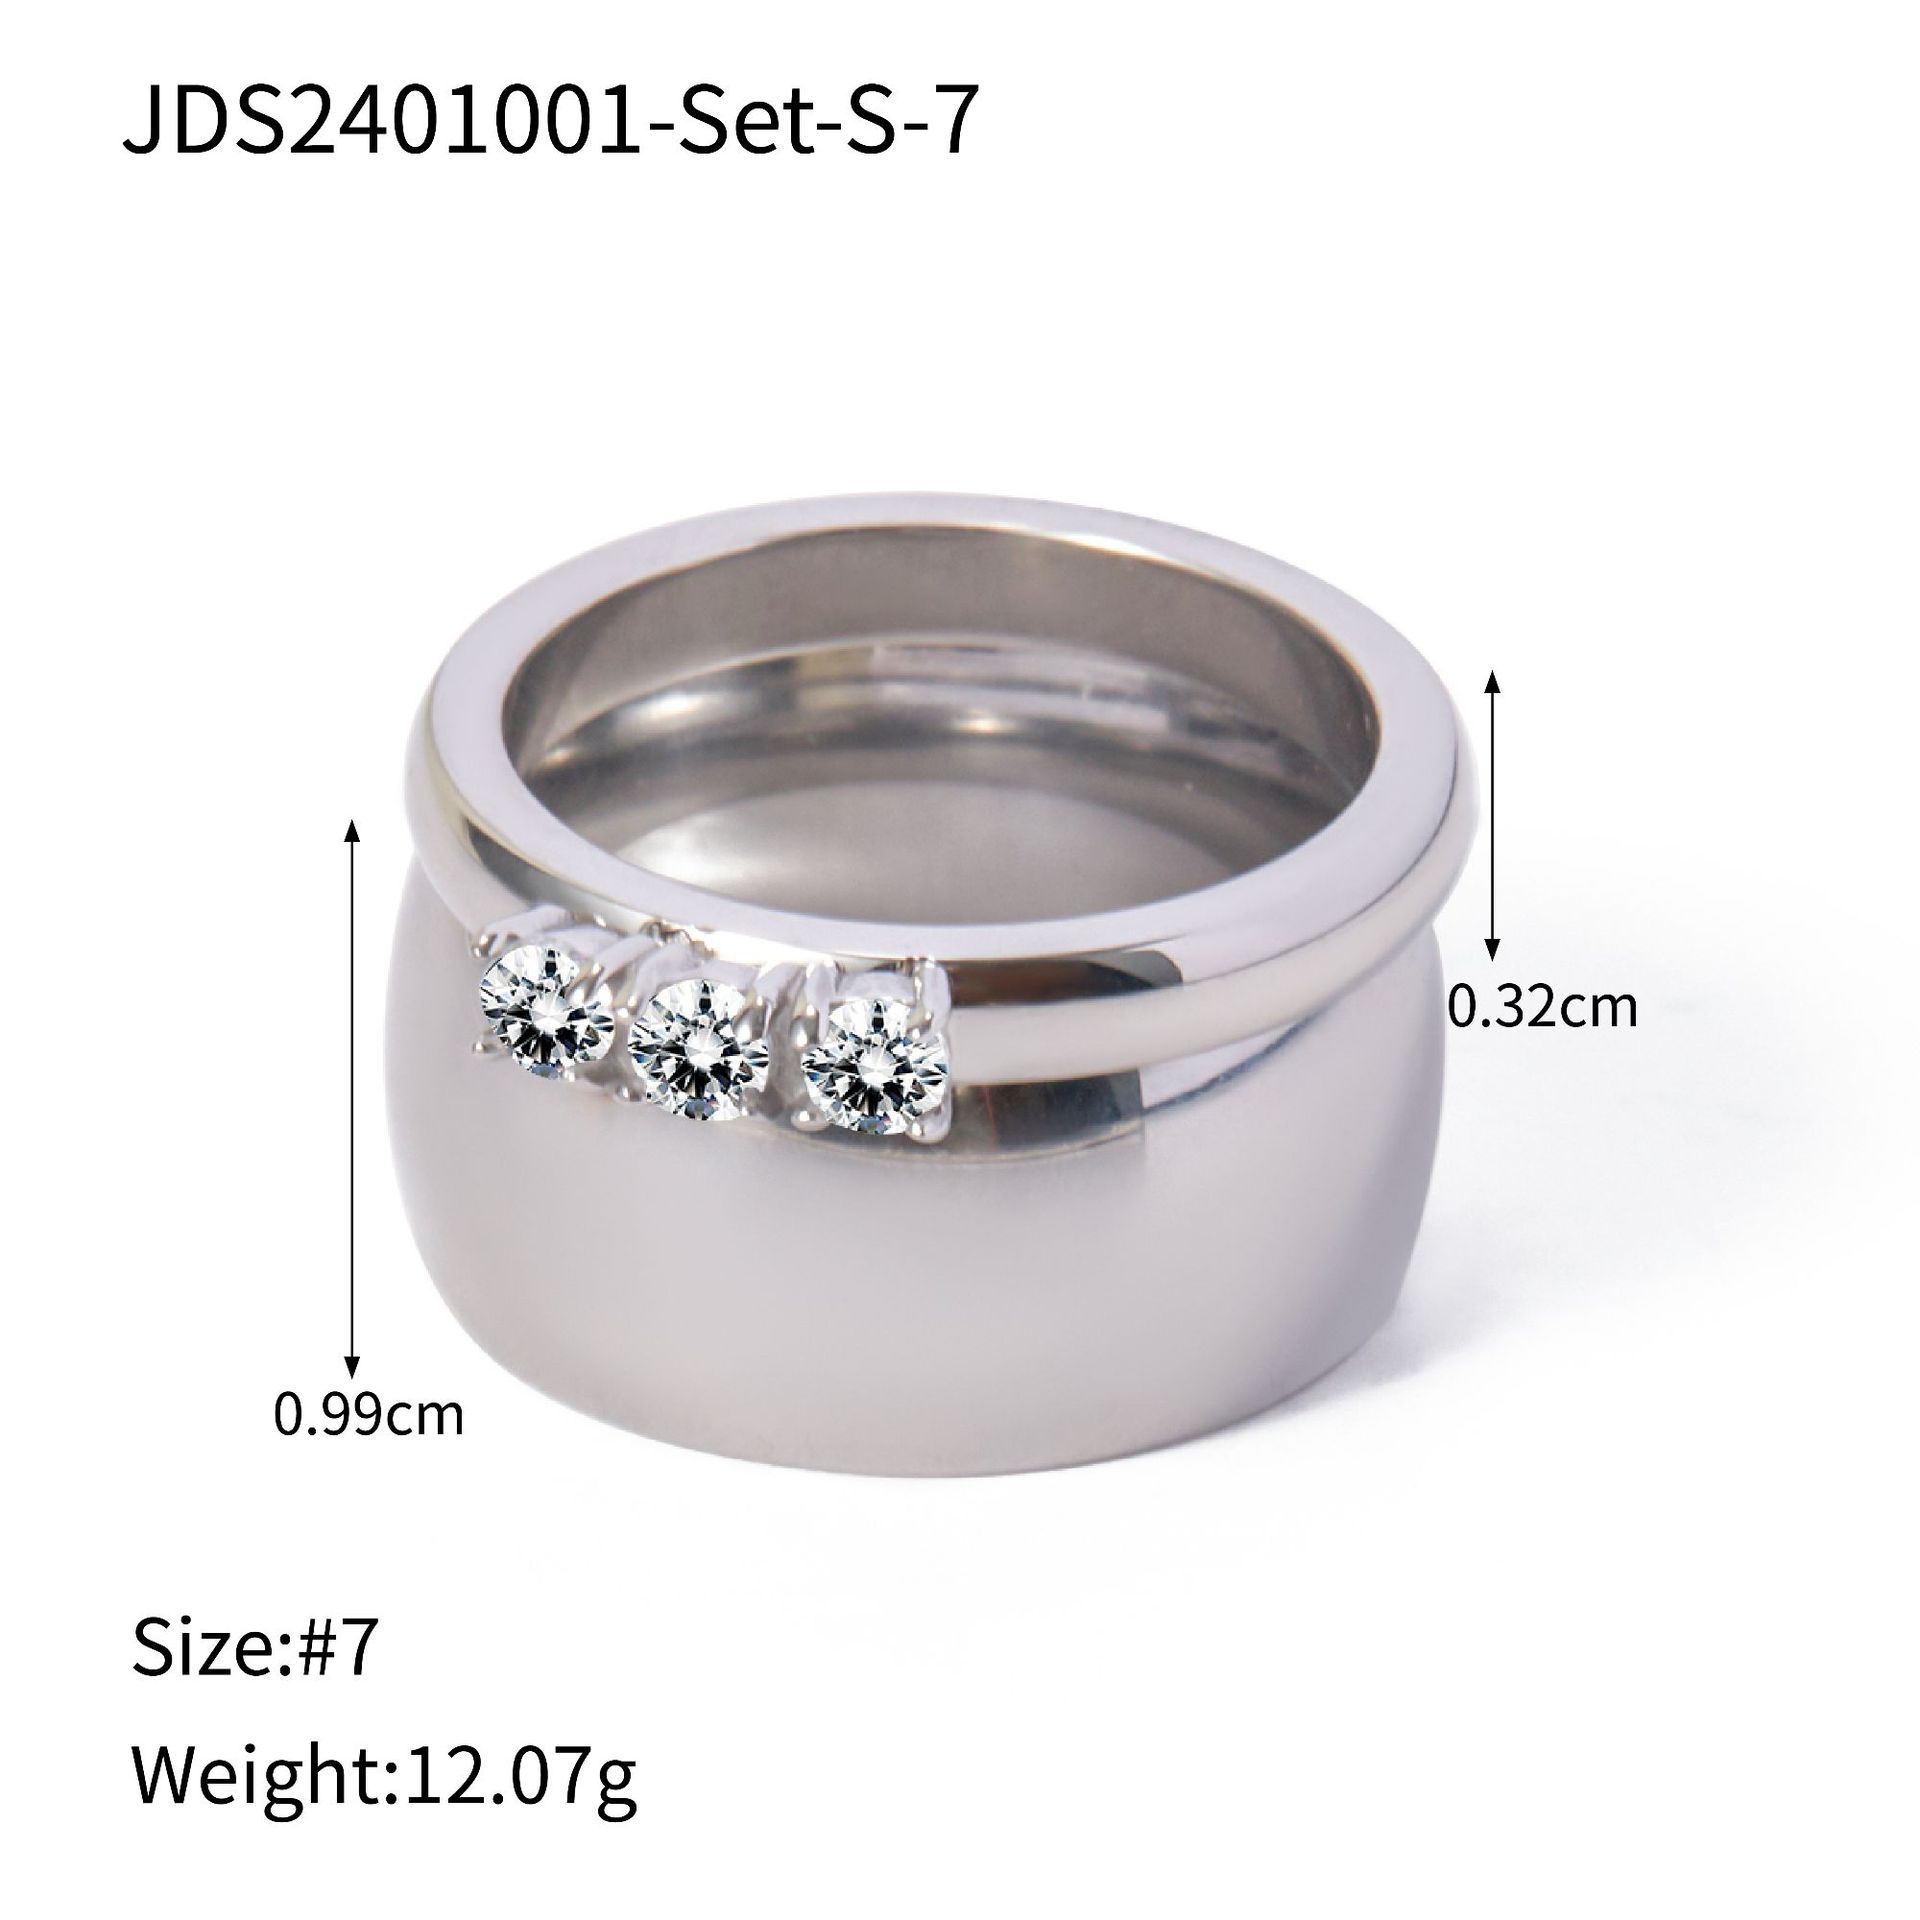 JDS2401001-Set-S-7